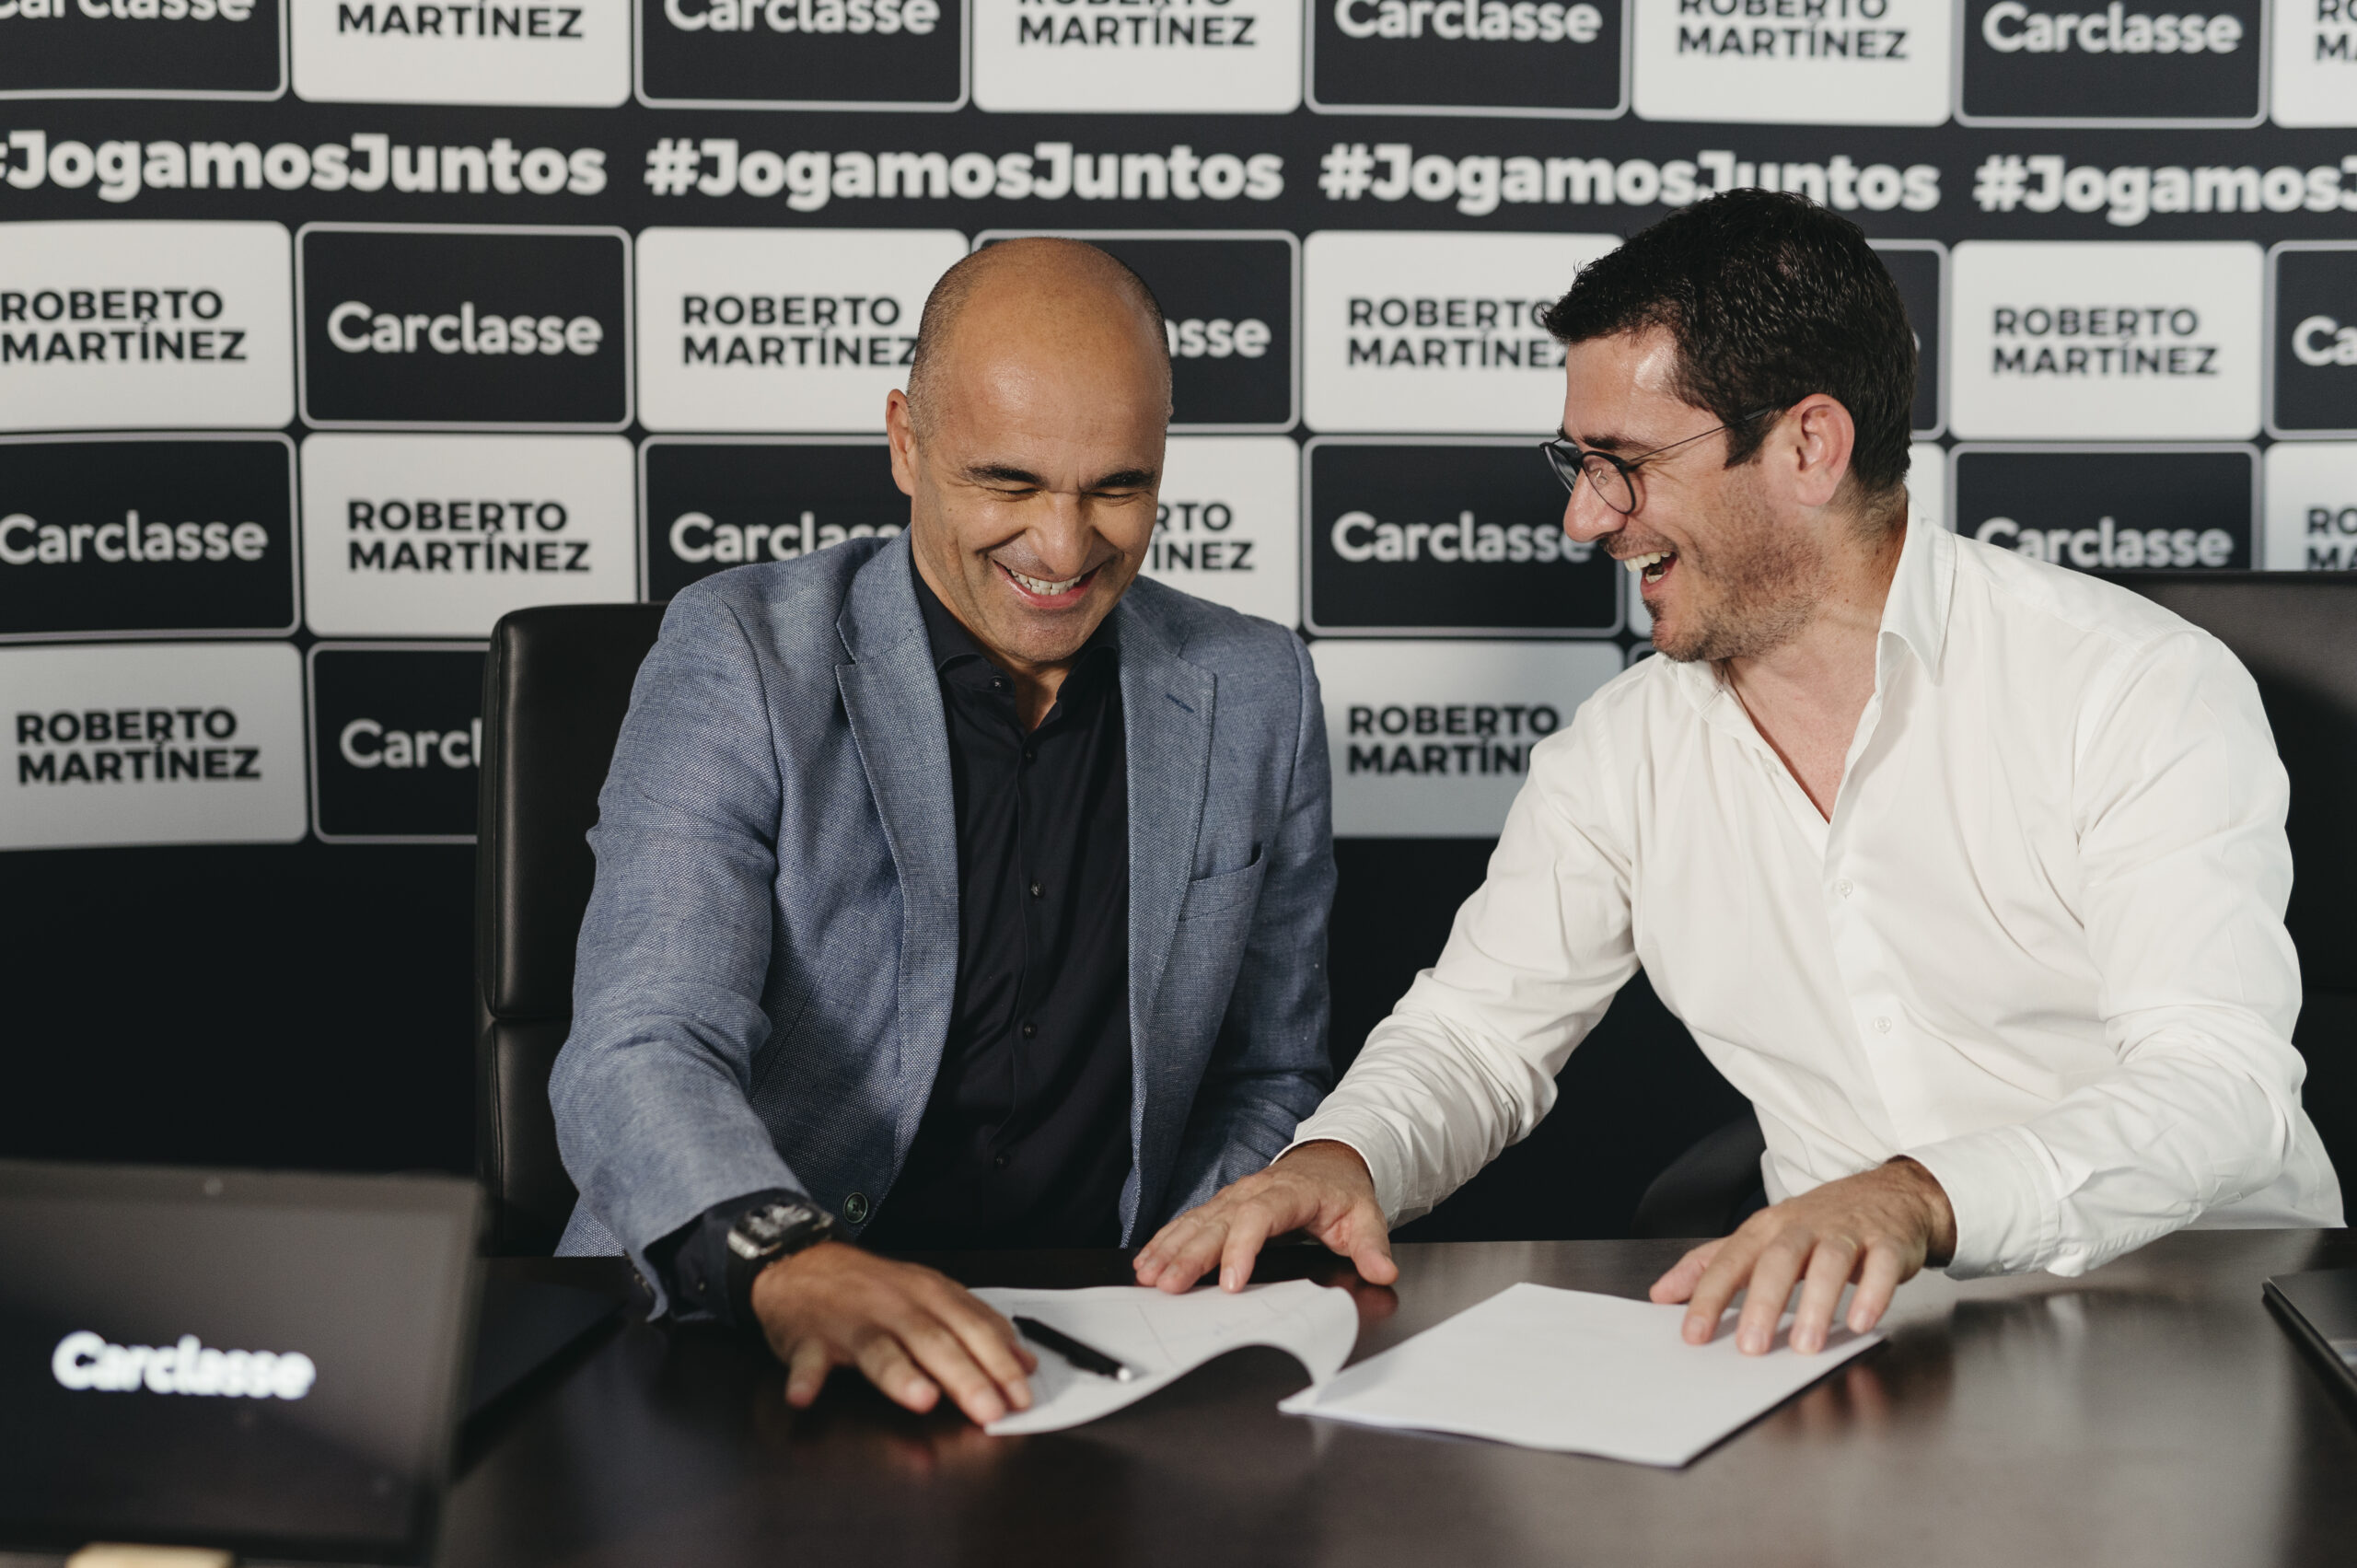 Roberto Martínez é o novo embaixador da Carclasse: selecionador vai ser o rosto de campanha nas redes sociais